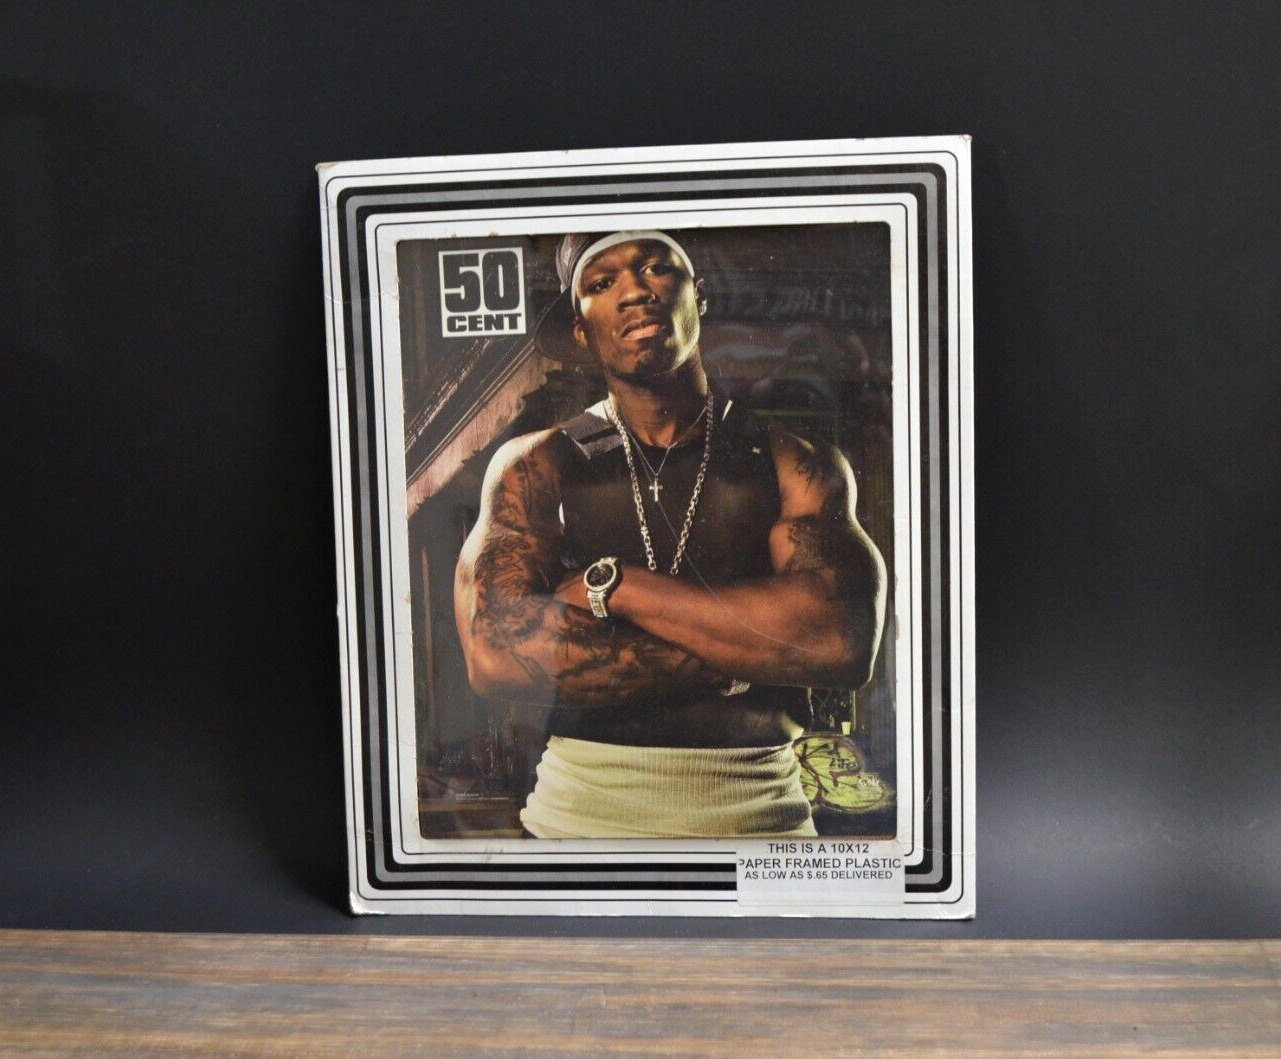 50 Cent Photo Copy G-Unit Rapper 2003 Fan Image